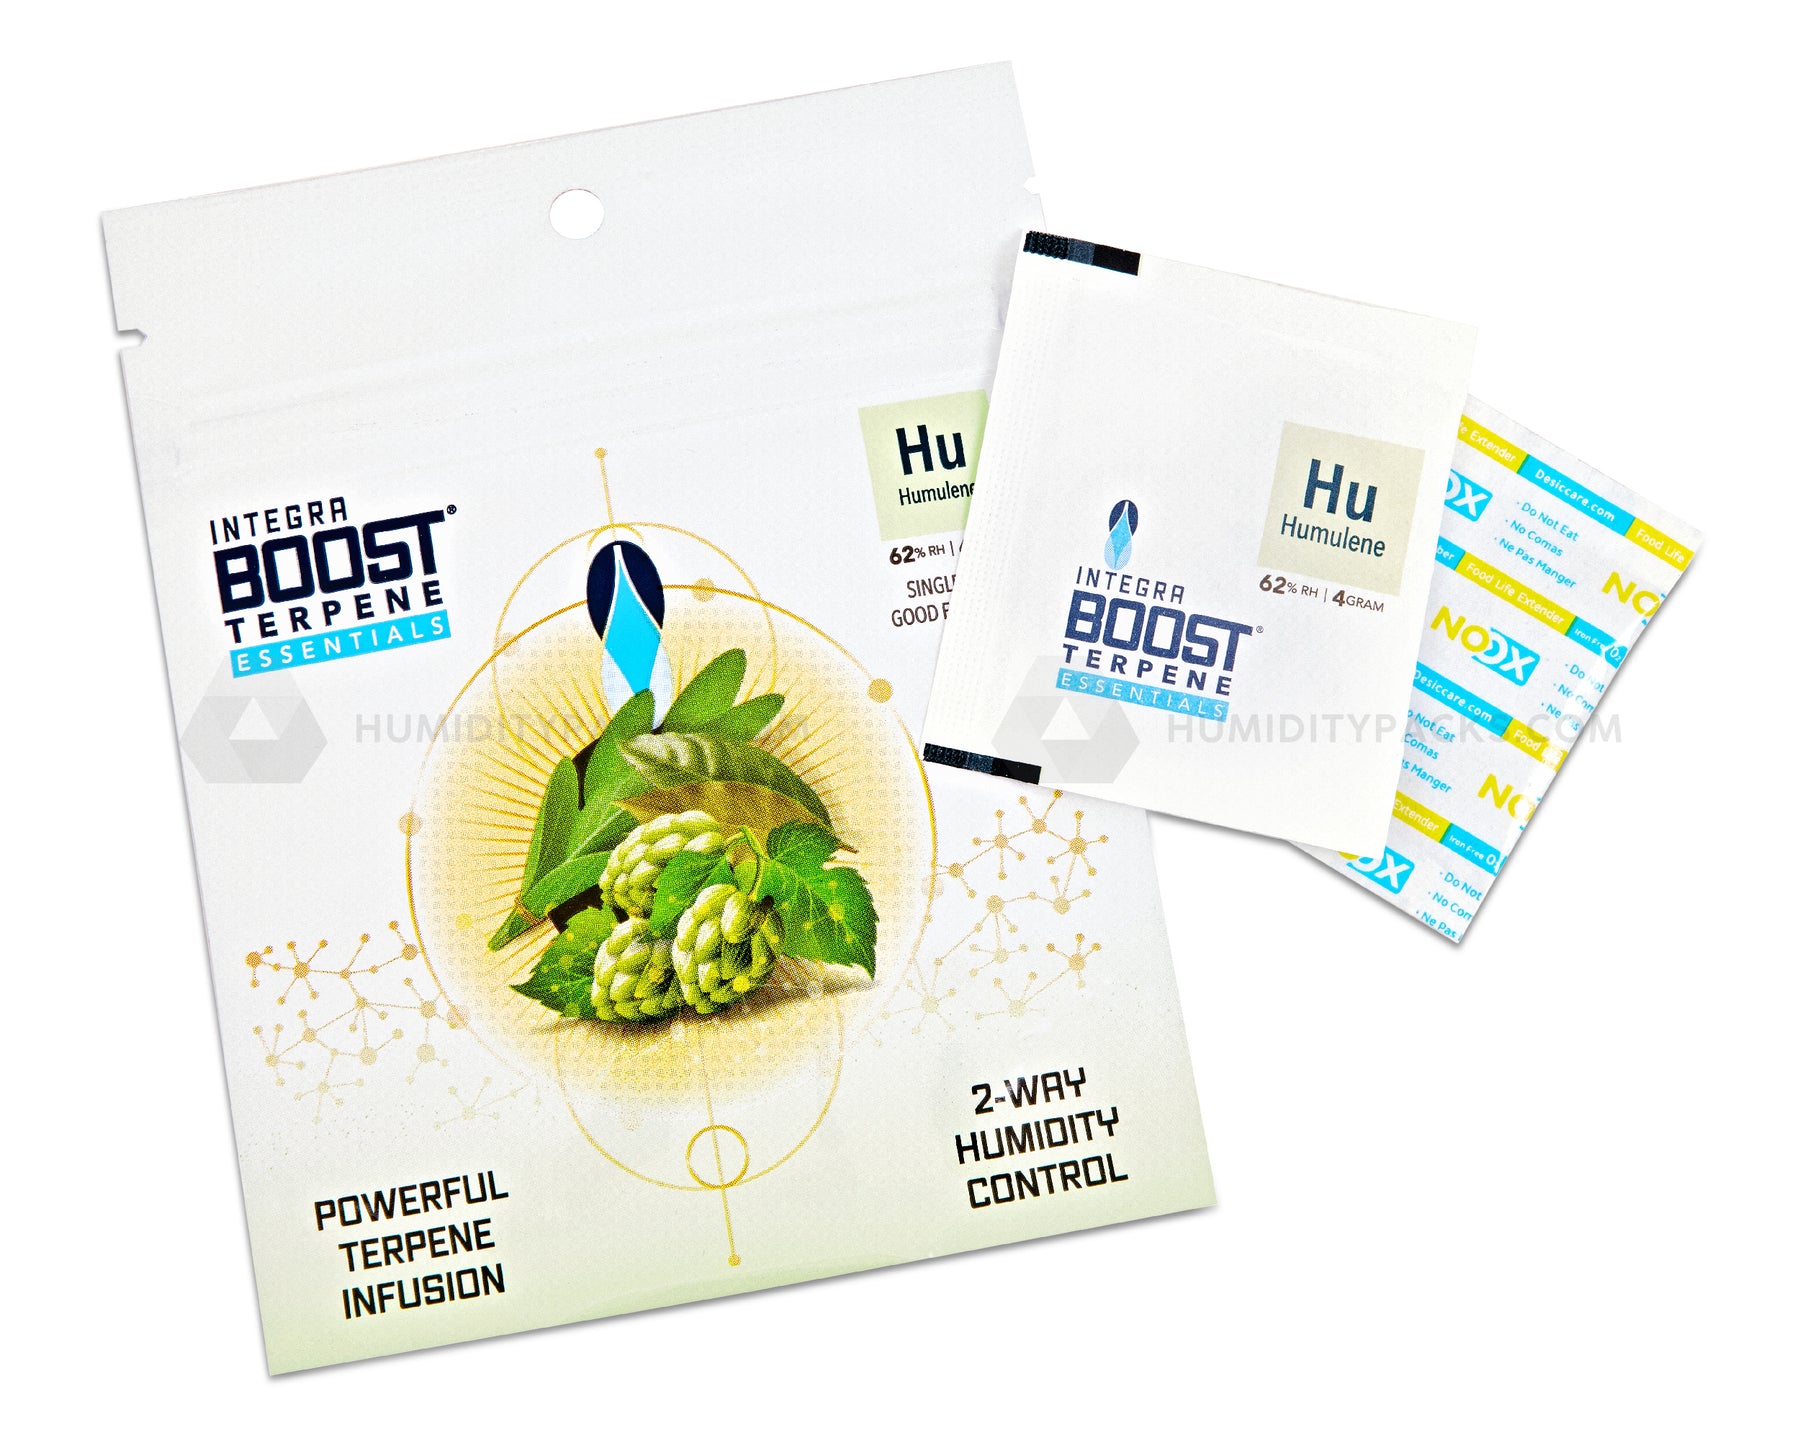 Integra Boost 4 Gram 2-Way Terpene Essentials Humulene Humidity Packs (62%) 48-Box Humidity Packs - 6